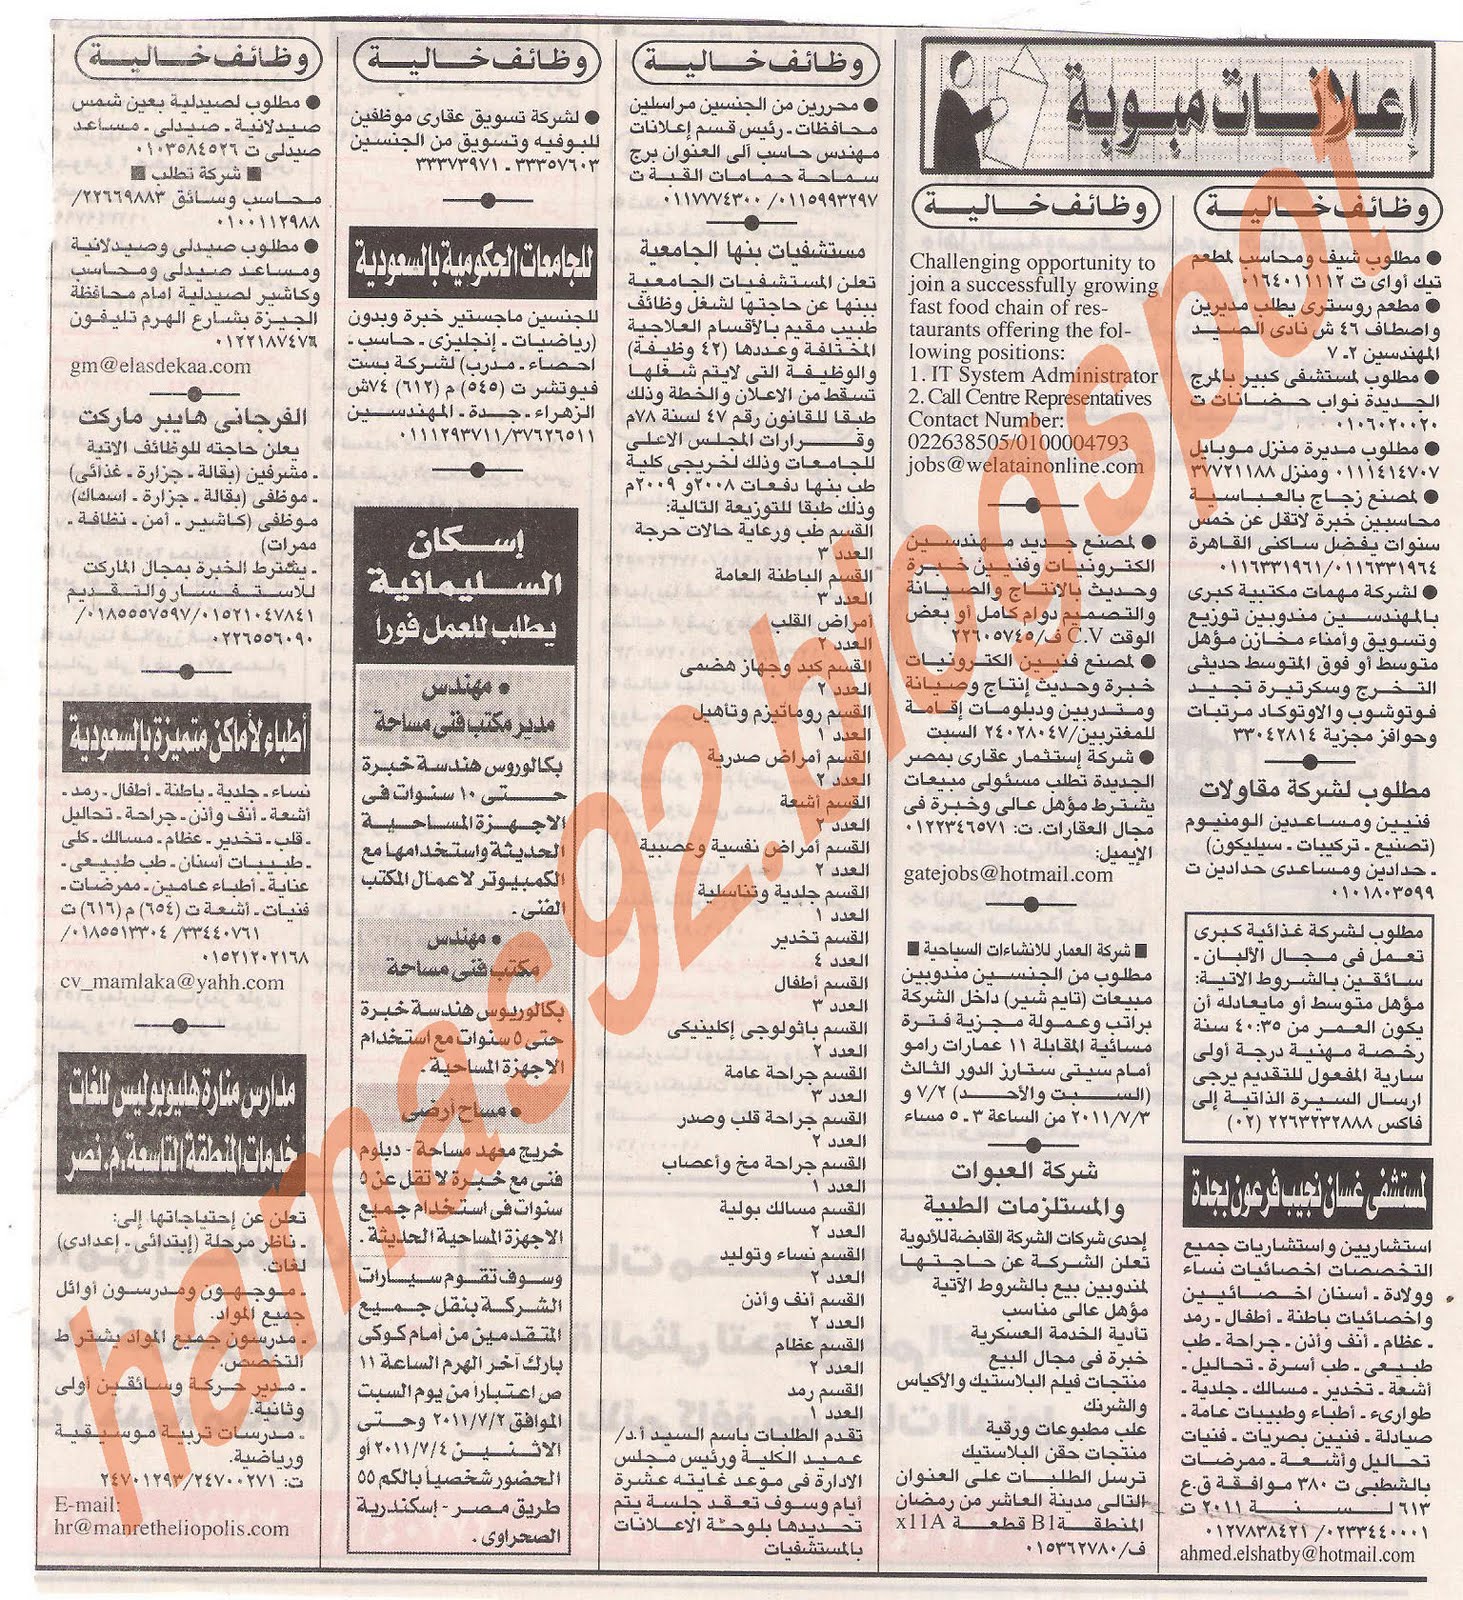 وظائف جريدة الاهرام الجمعة 1 يوليو 2011 - الجزء الثانى Picture+007